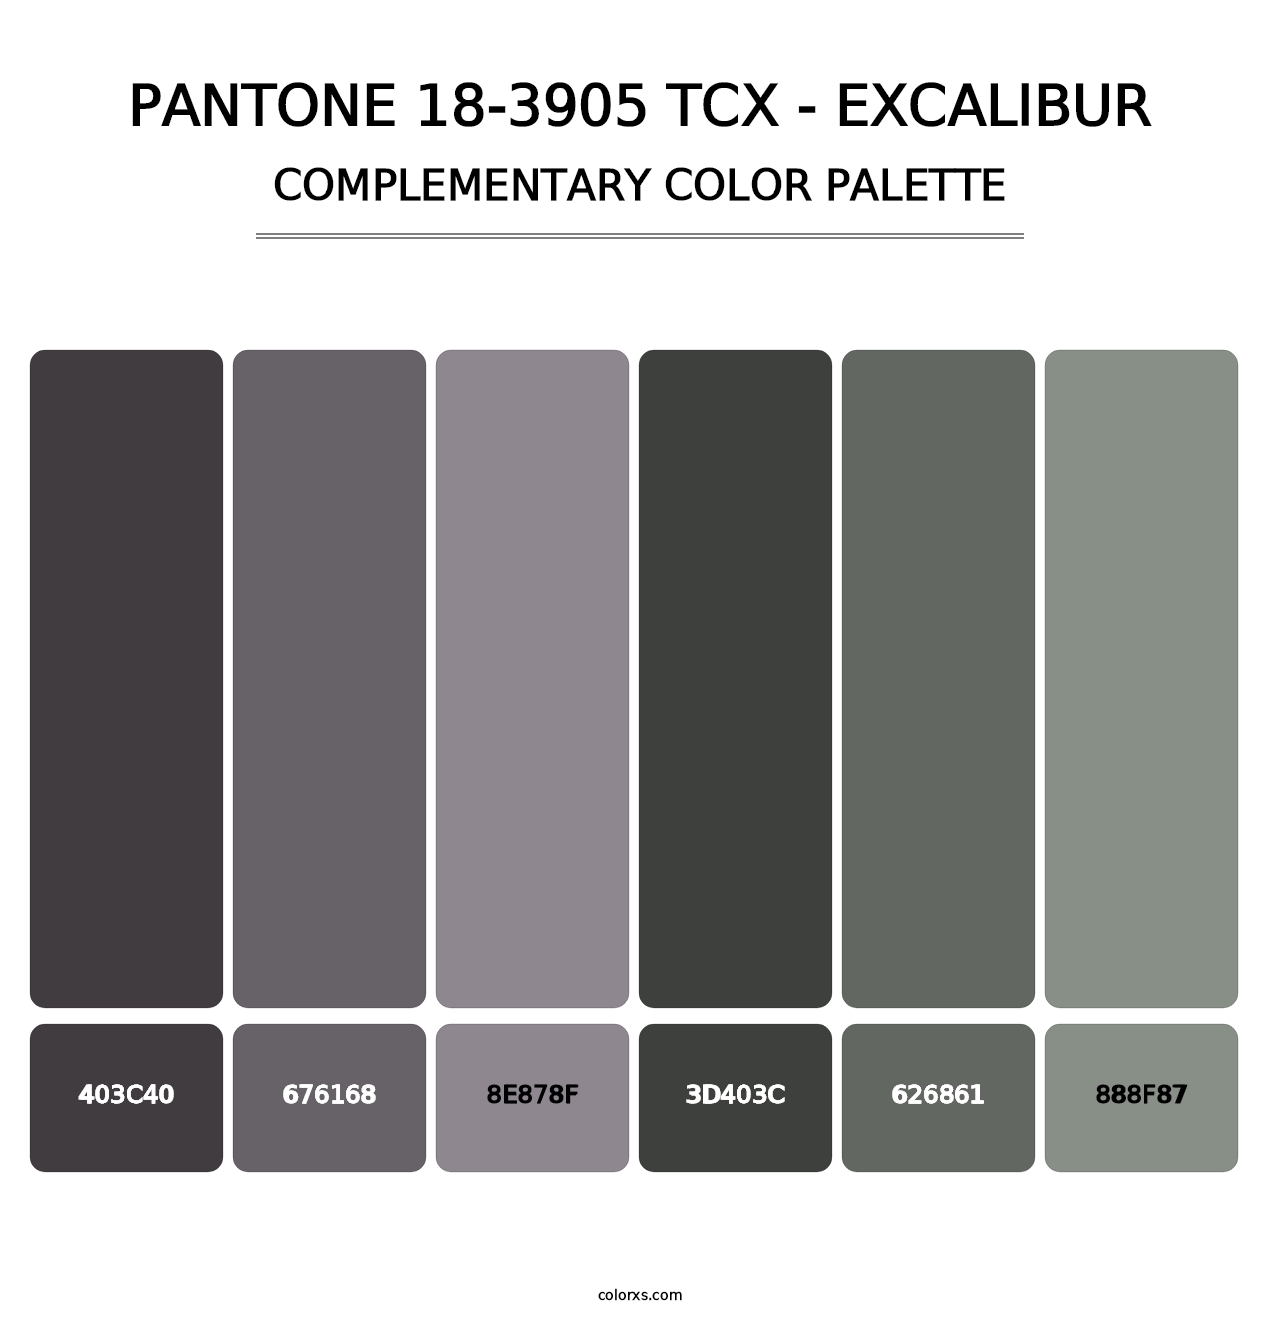 PANTONE 18-3905 TCX - Excalibur - Complementary Color Palette